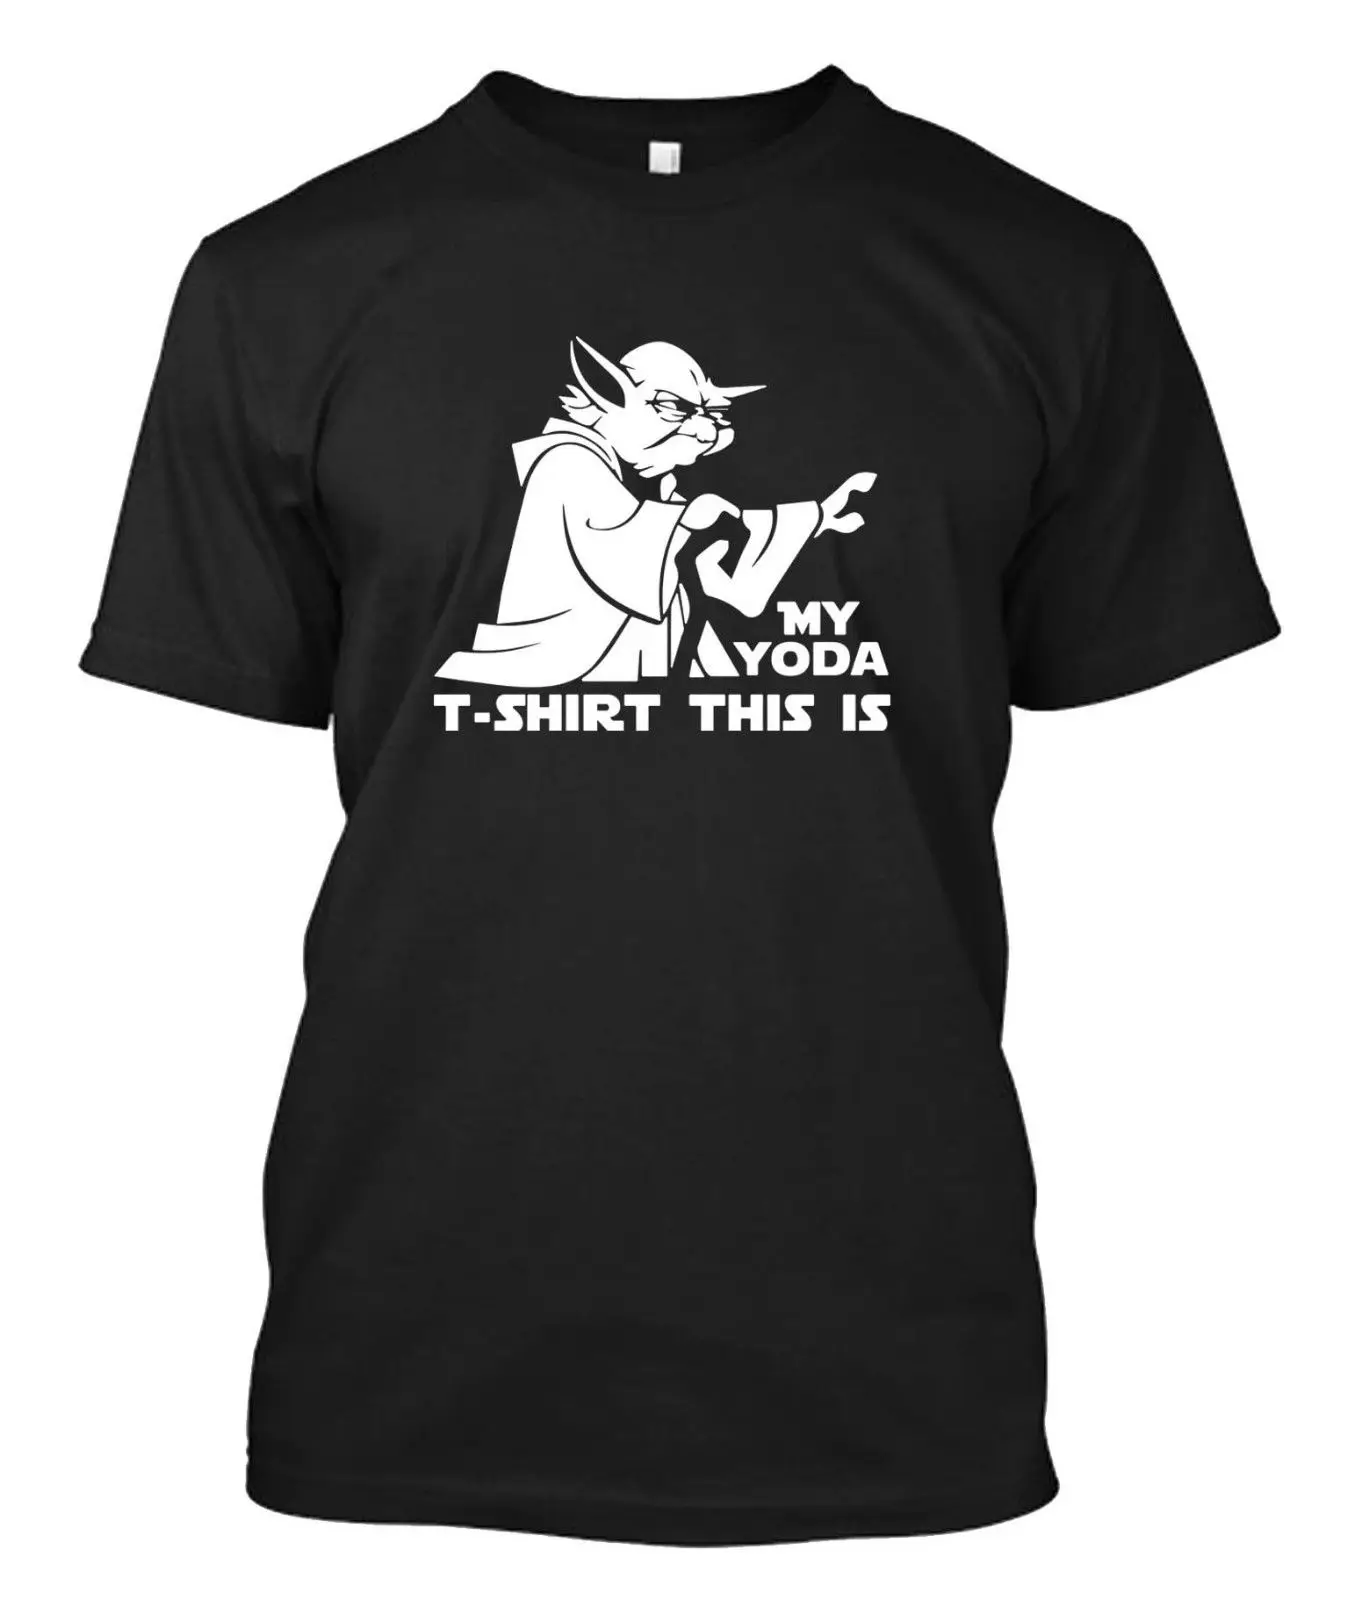 Фото Yoda do or not try quote легендарный джедай Звездные войны футболка на заказ крутая(Aliexpress на русском)